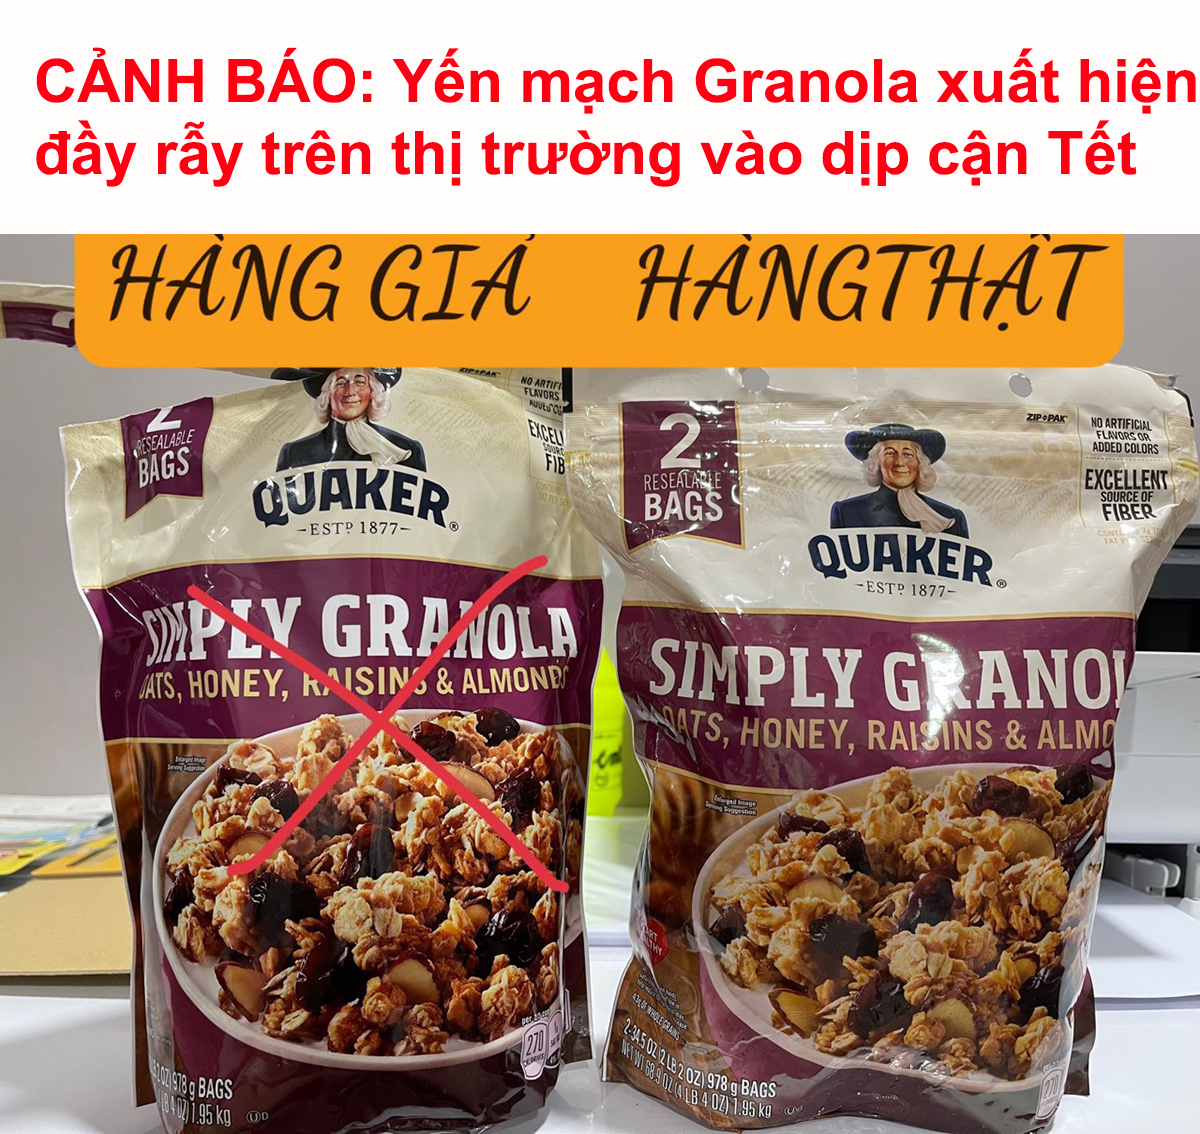 cảnh báo yến mạch quaker granola xuất hiện nhiều hàng giả trên thị trường